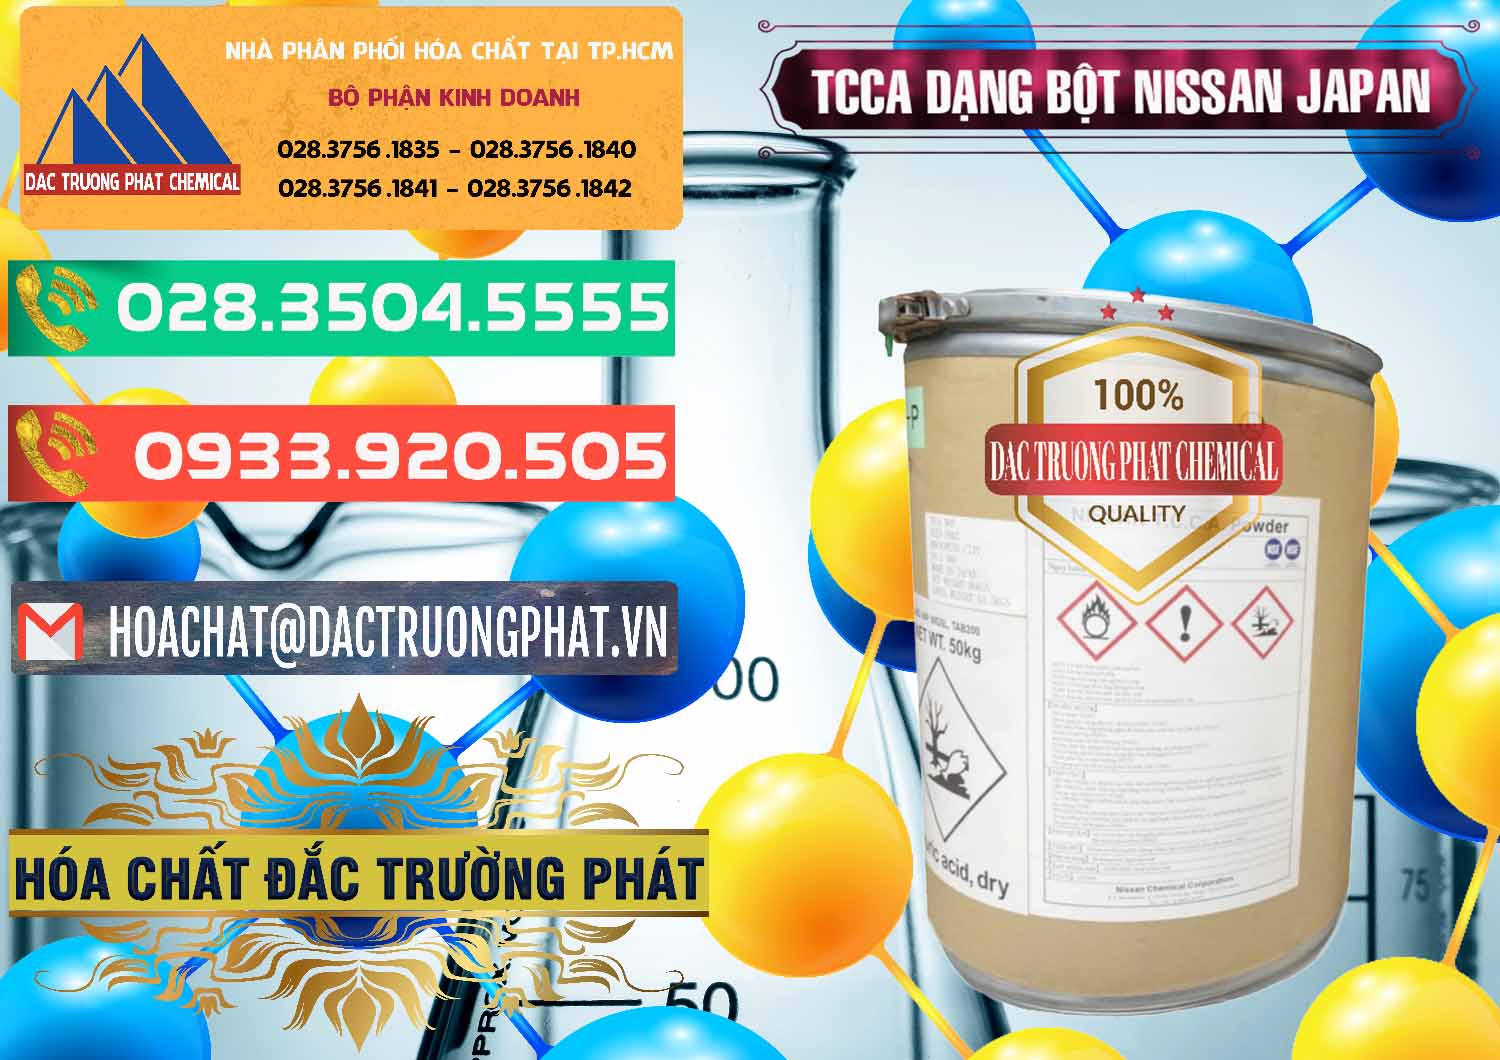 Công ty bán và cung ứng TCCA - Acid Trichloroisocyanuric 90% Dạng Bột Nissan Nhật Bản Japan - 0375 - Chuyên phân phối và kinh doanh hóa chất tại TP.HCM - congtyhoachat.com.vn